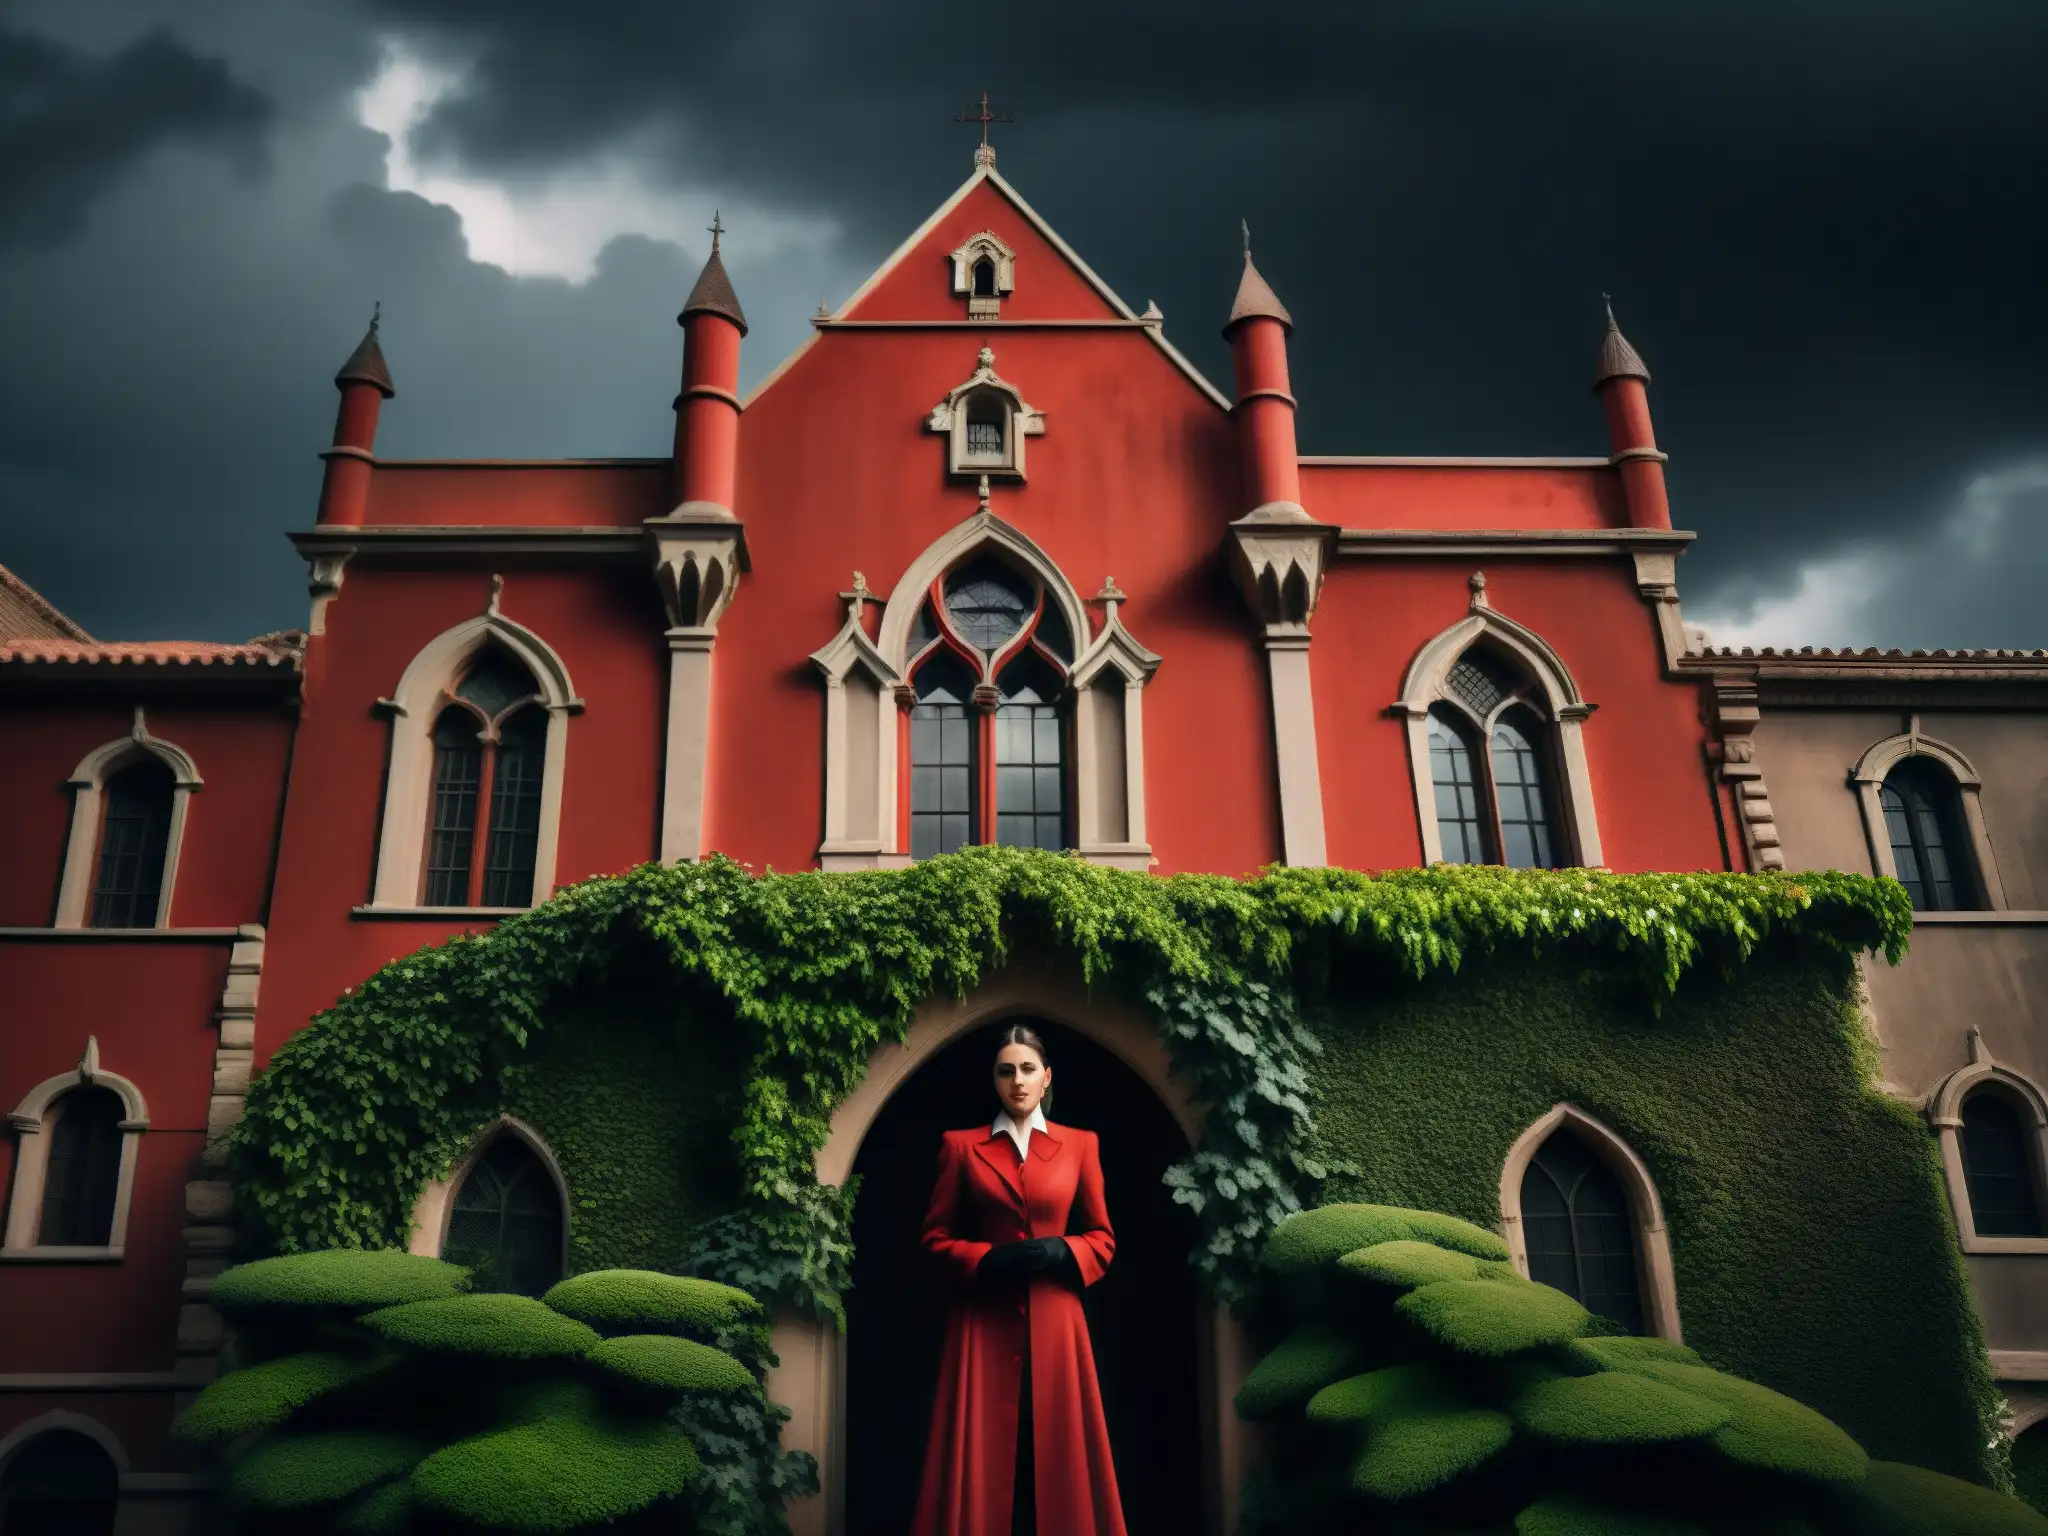 La imponente Casa Roja se yergue bajo un cielo sombrío, con arquitectura gótica y enredaderas, evocando al Fantasma del Británico en la Casa Roja